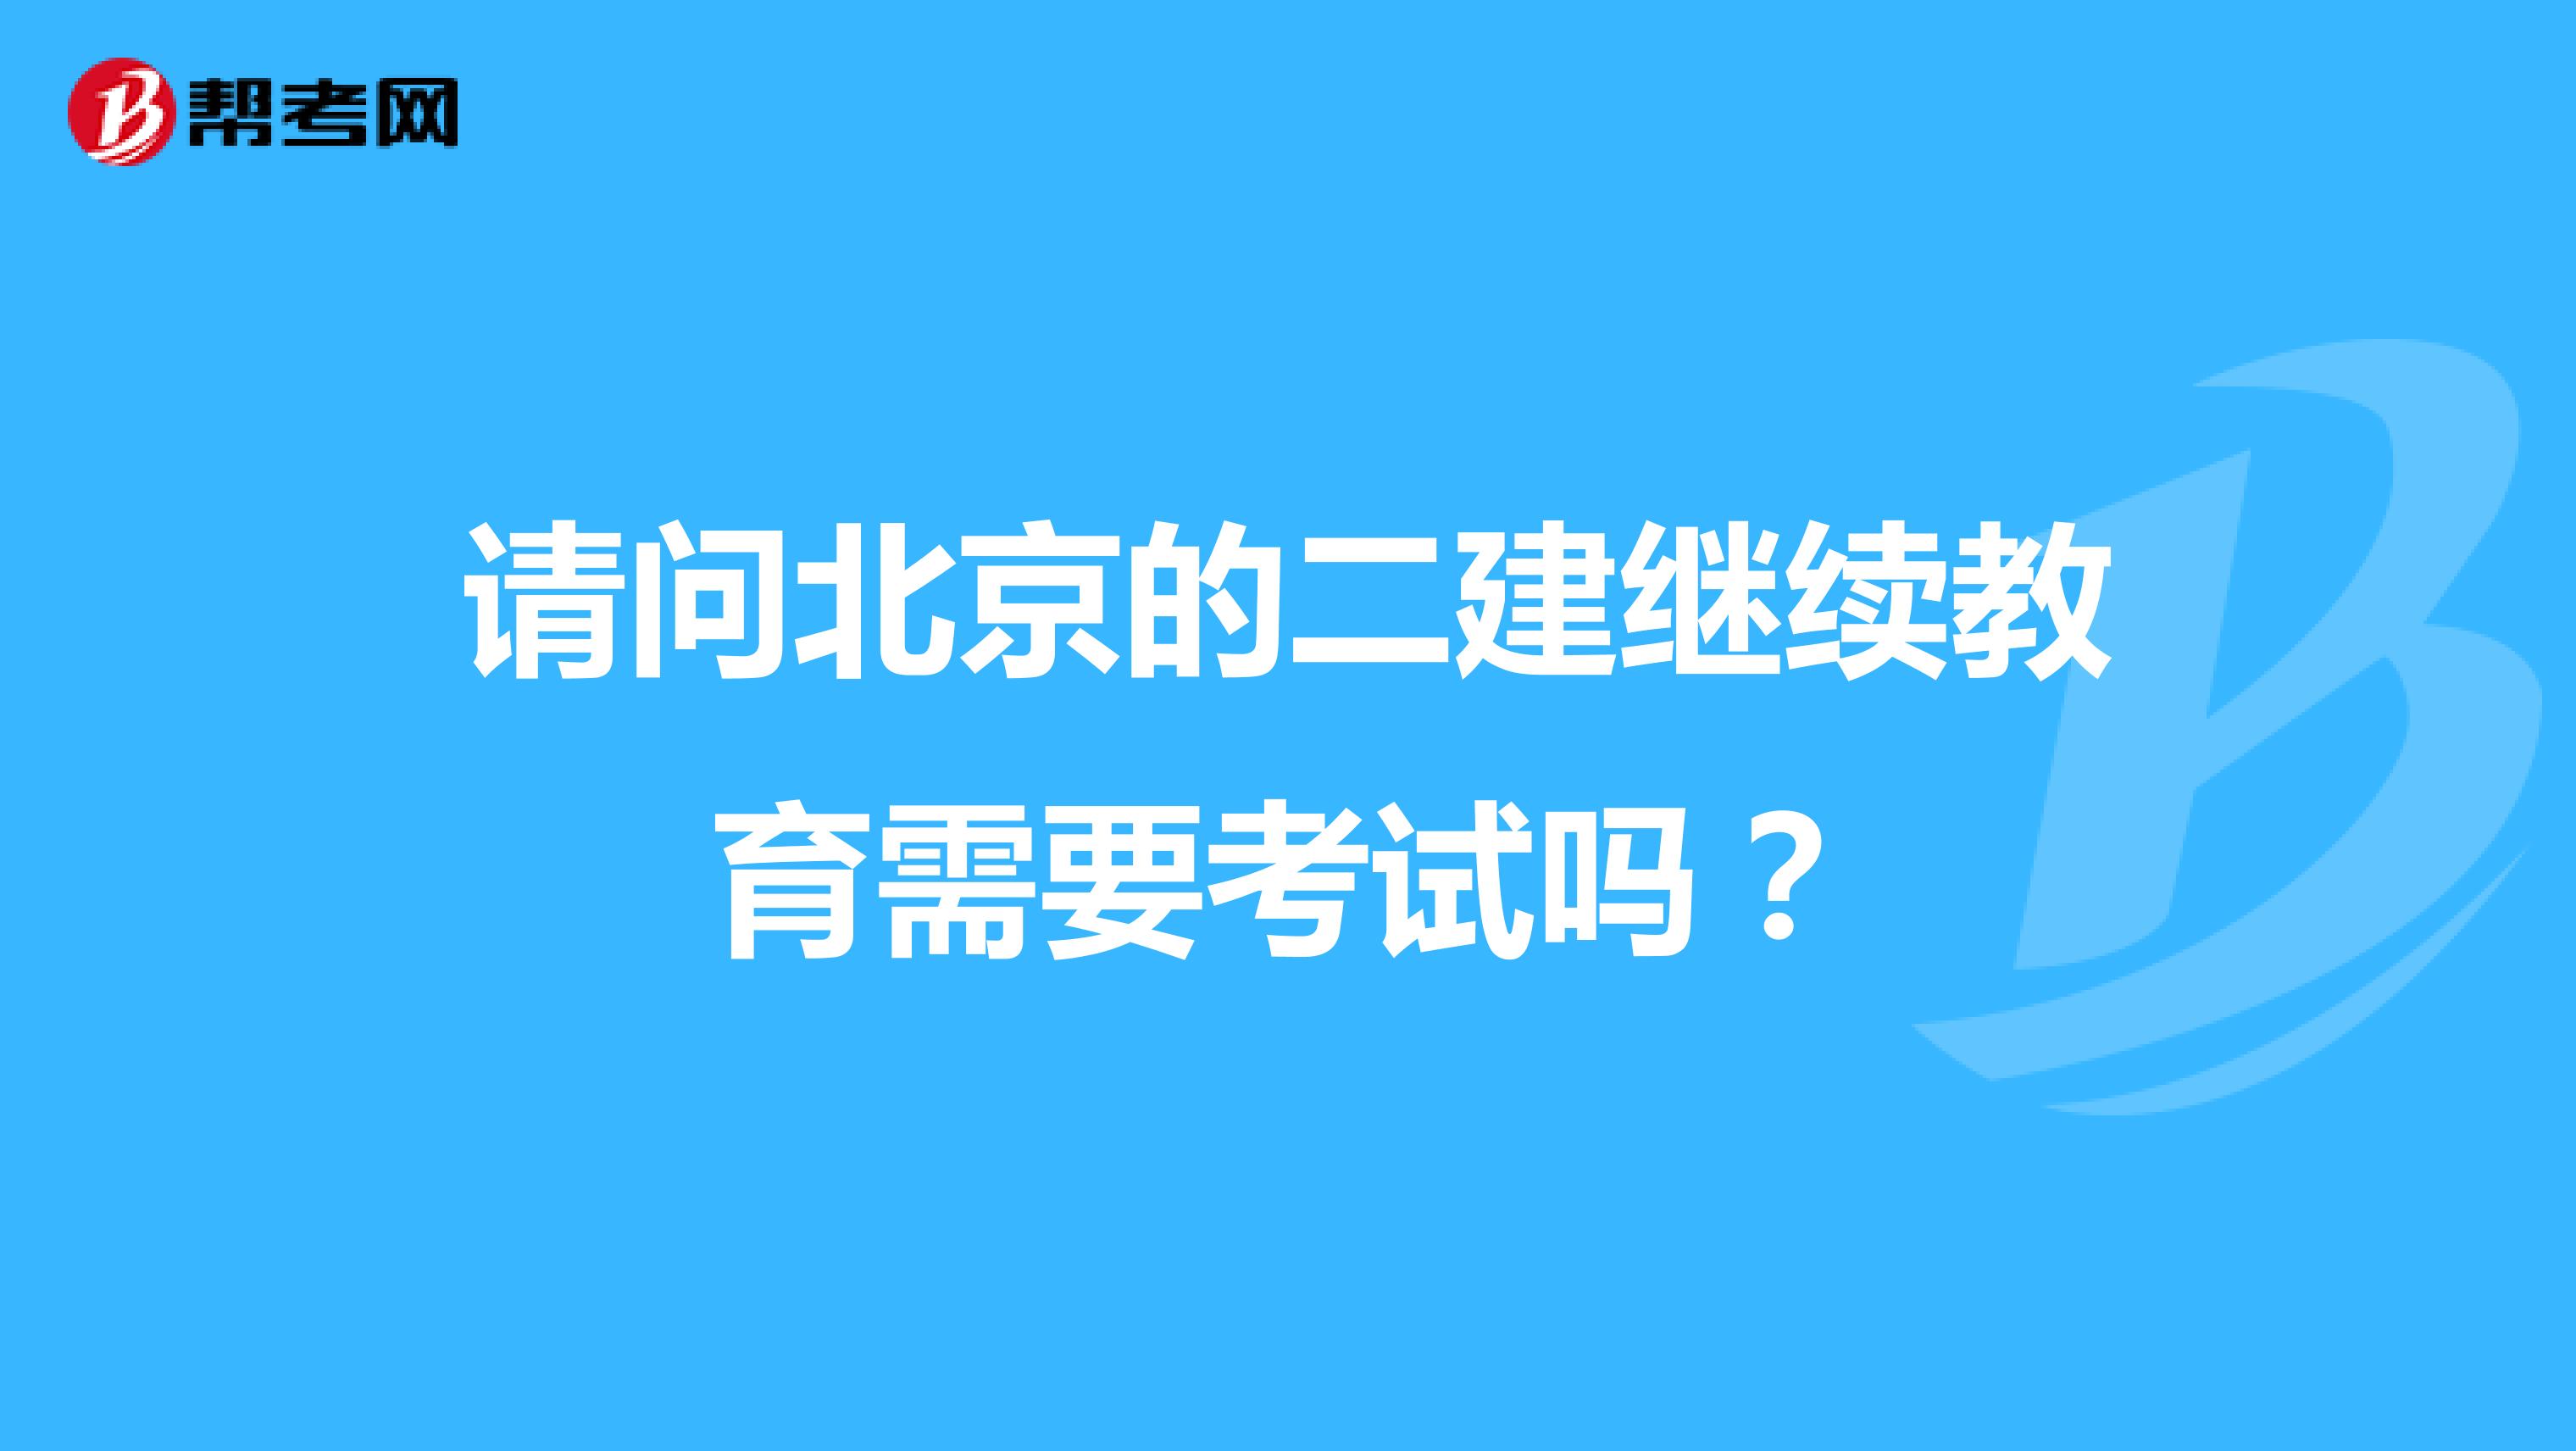 请问北京的二建继续教育需要考试吗？